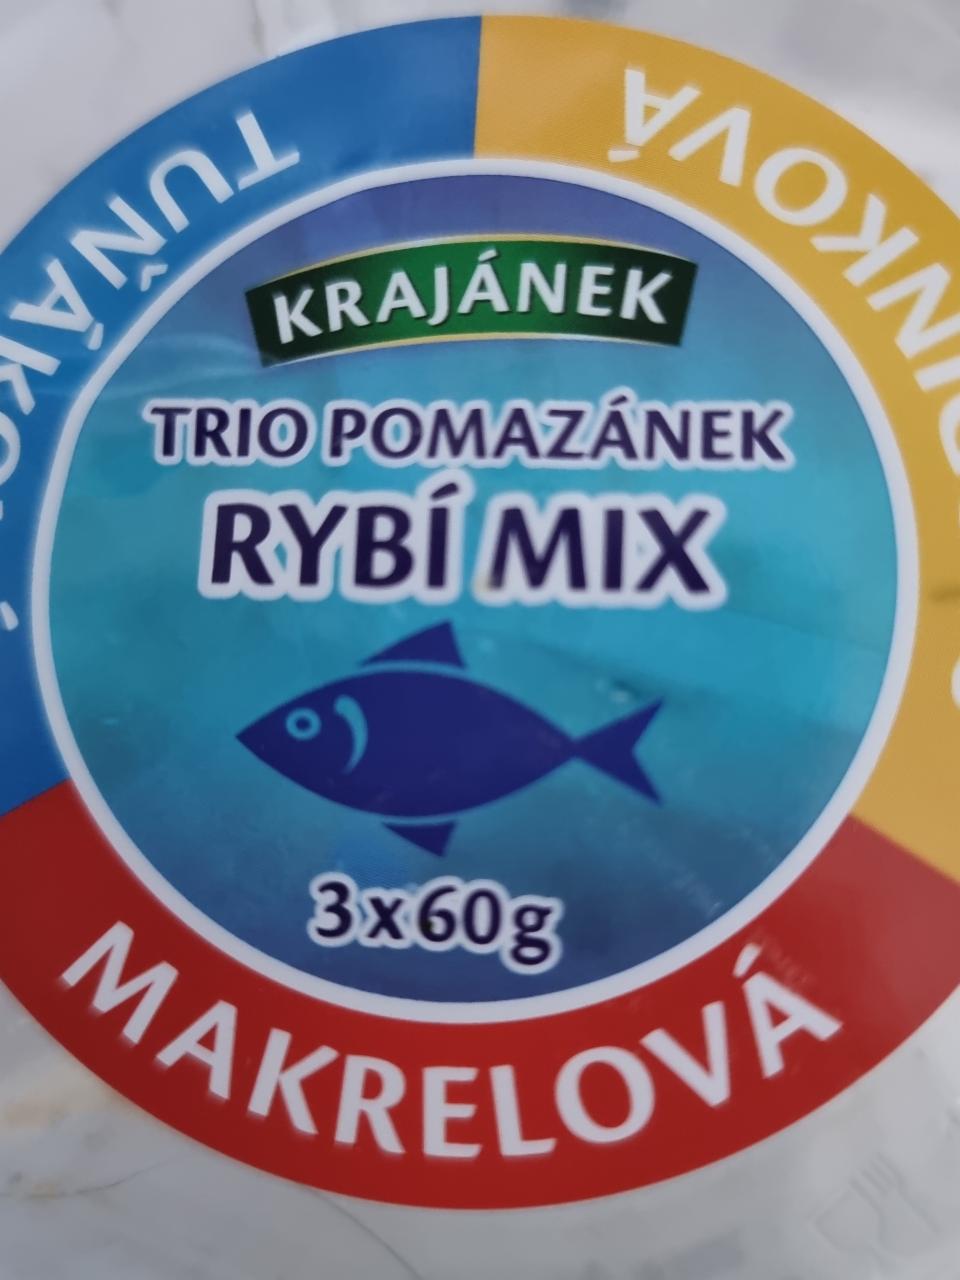 Fotografie - Trio pomazánek Rybí mix Krajánek